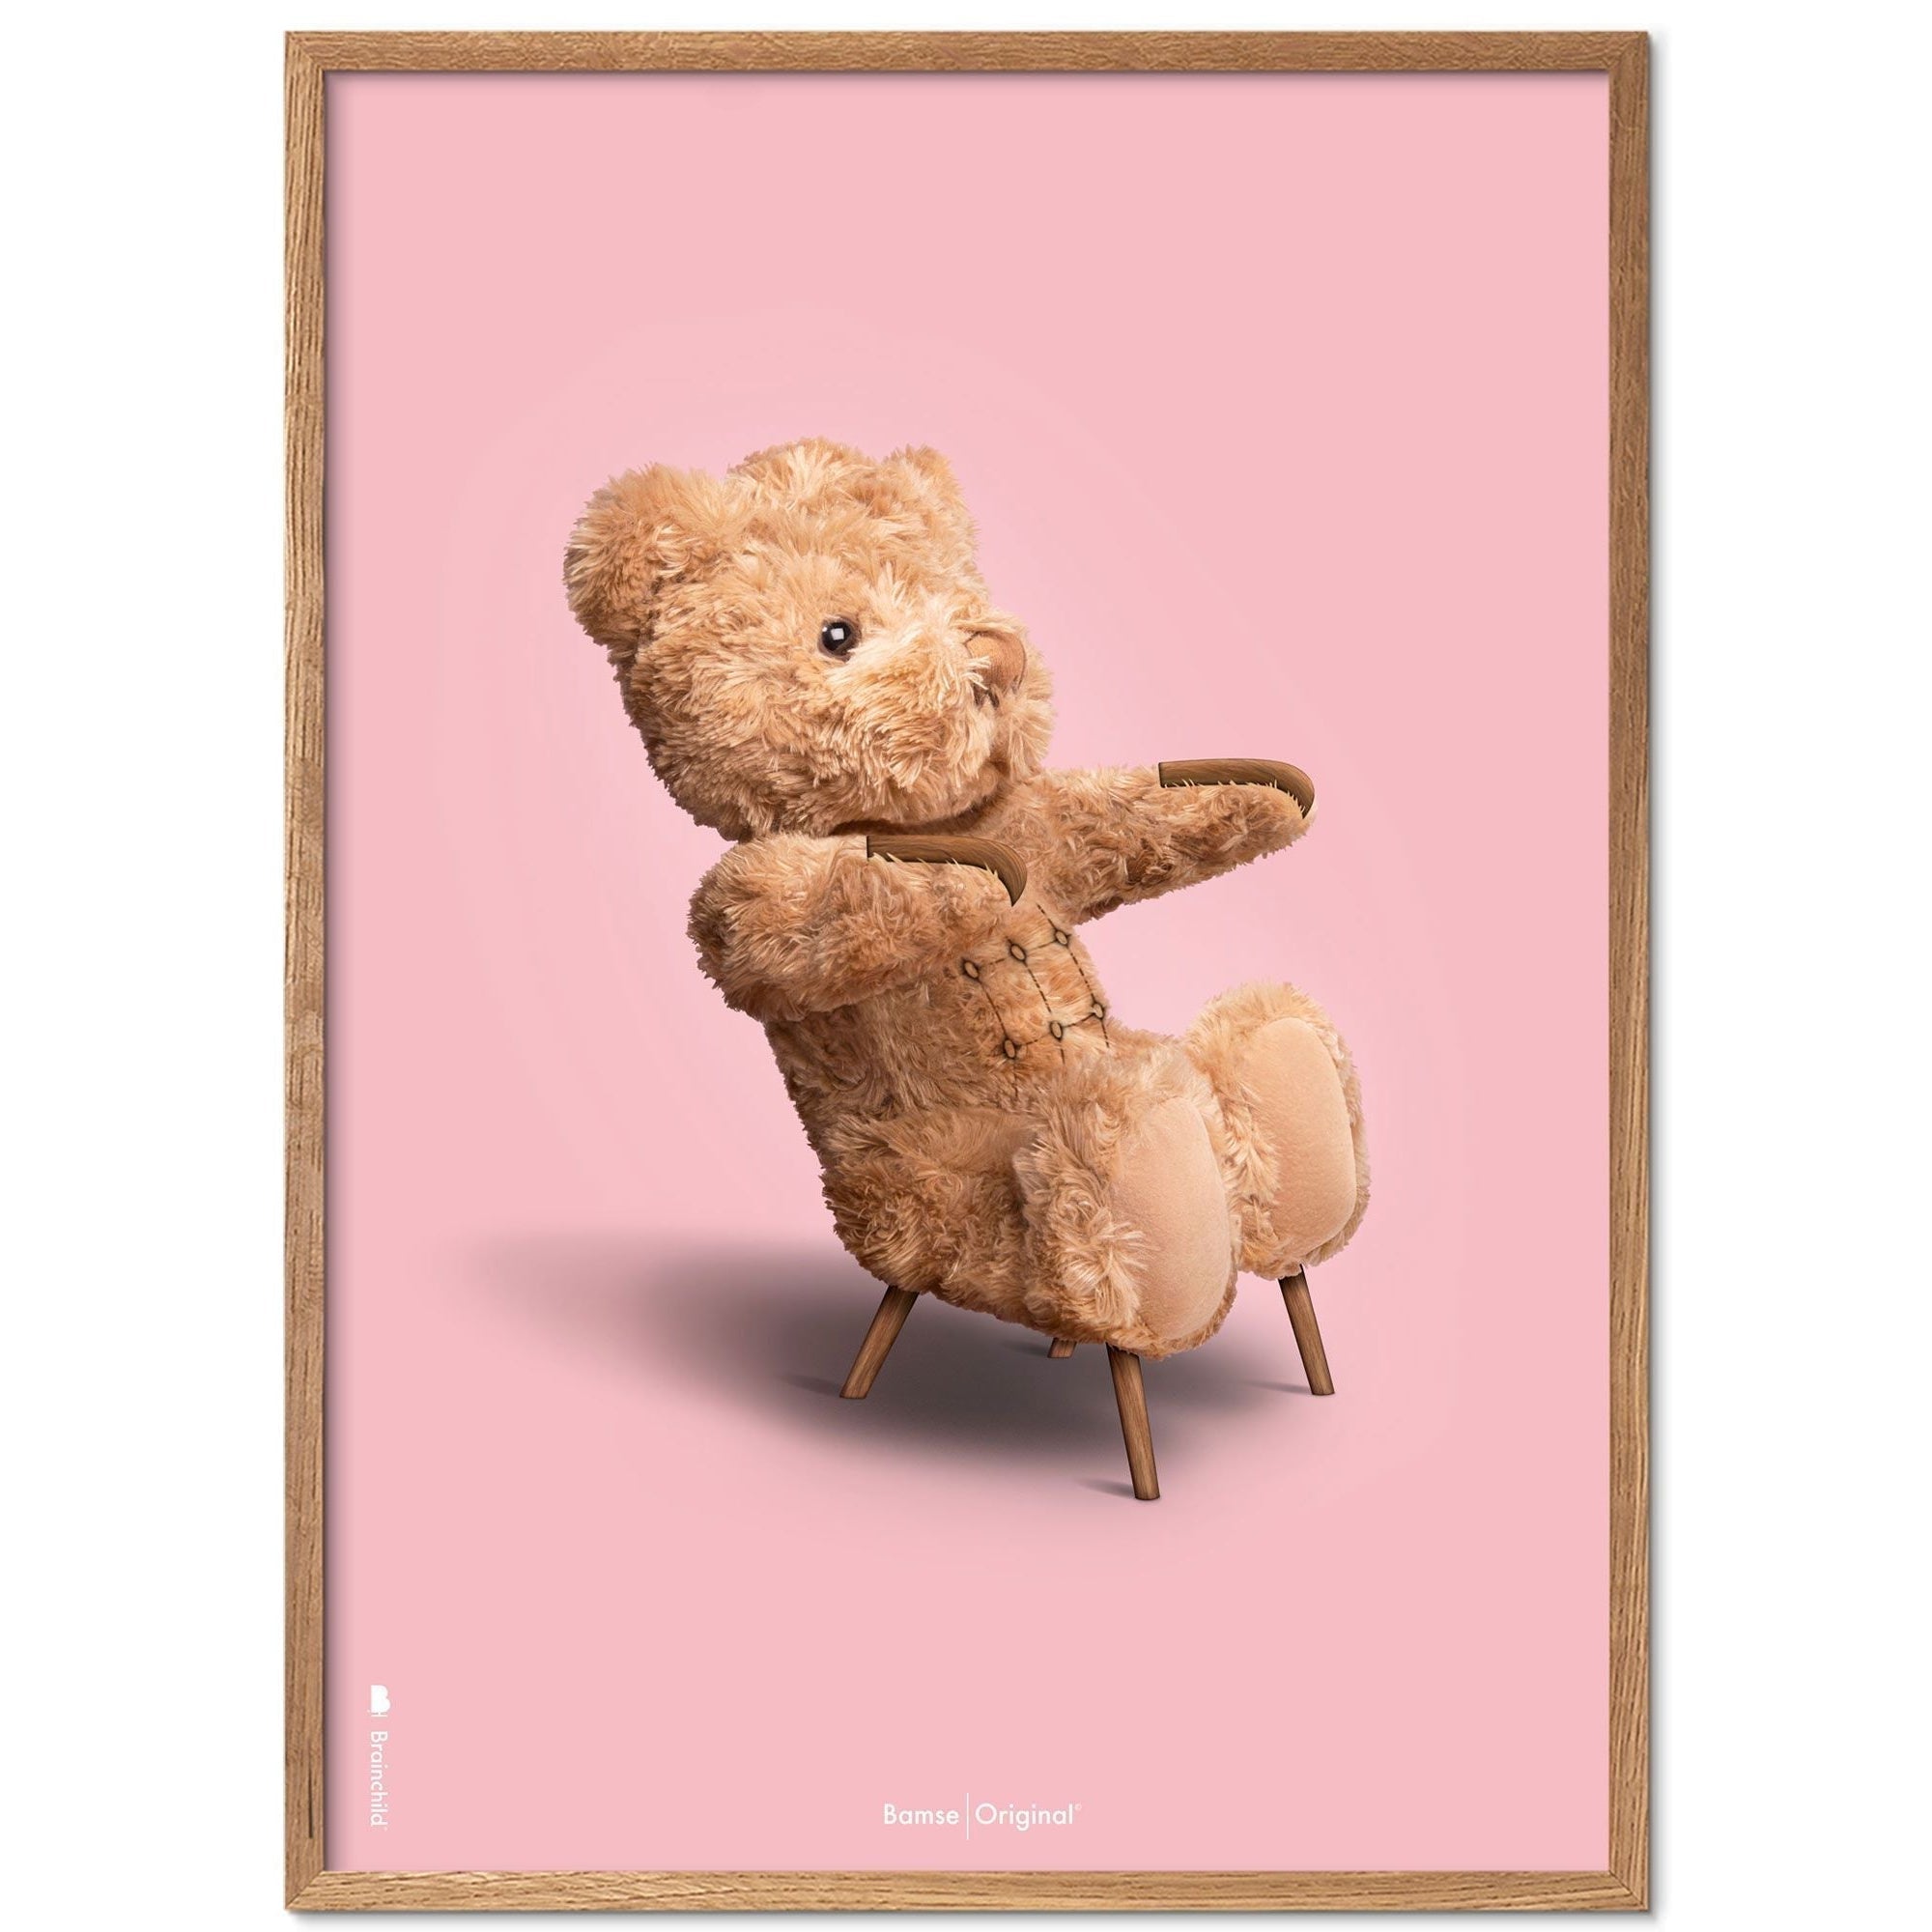 Brainchild Teddy Bear Classic plakát z plakátu vyrobený z lehkého dřeva Ramme 70x100 cm, růžové pozadí